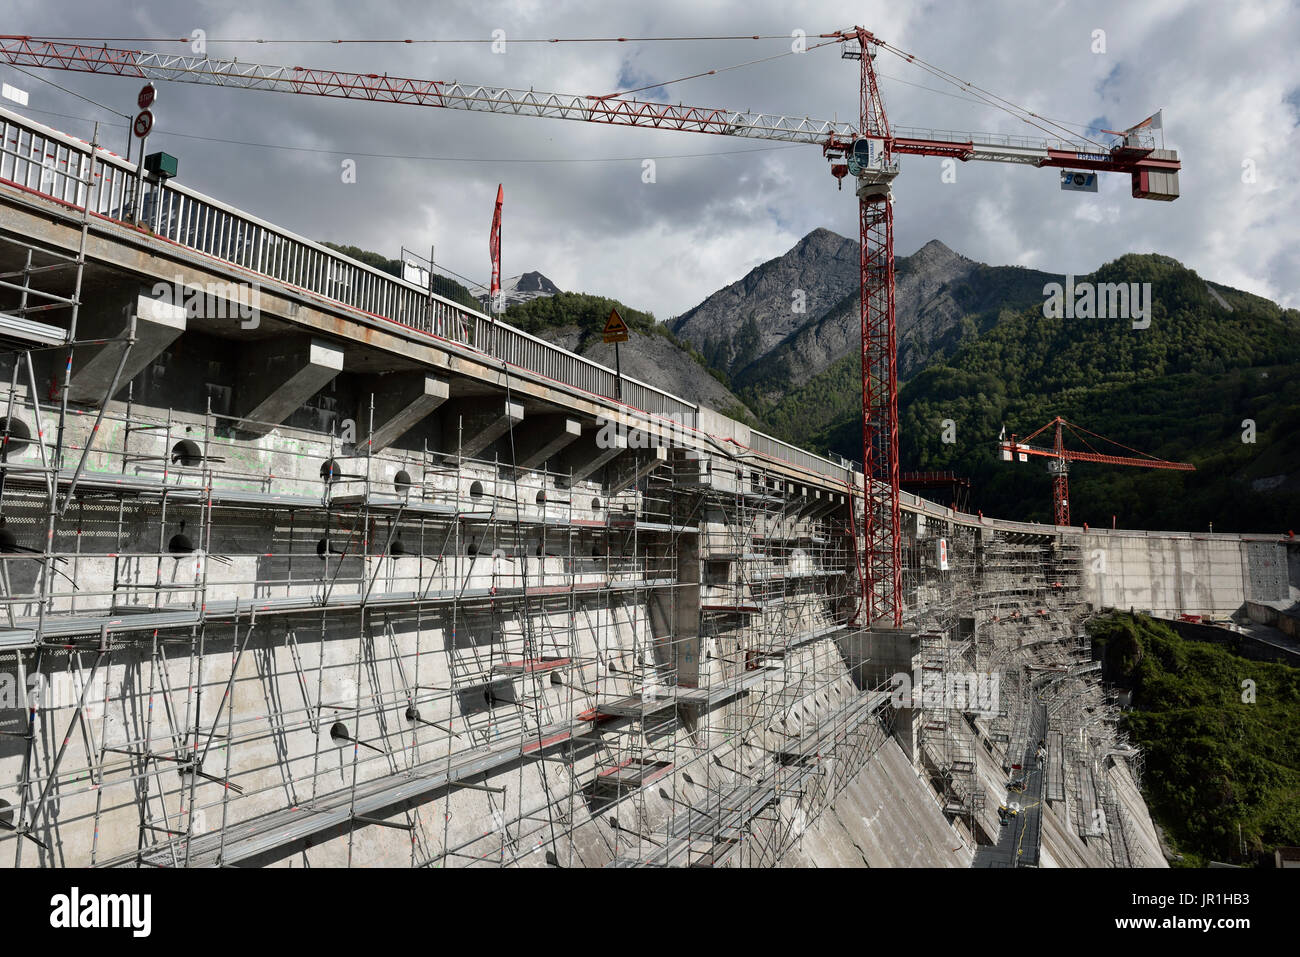 Les travaux sur le renforcement du barrage de Chambon, en 2014. Les travaux de consolidation permettent de traiter 3 problèmes observés sur le barrage, causée principalement par le phénomène d'alcali-réaction. Alpes, France Banque D'Images